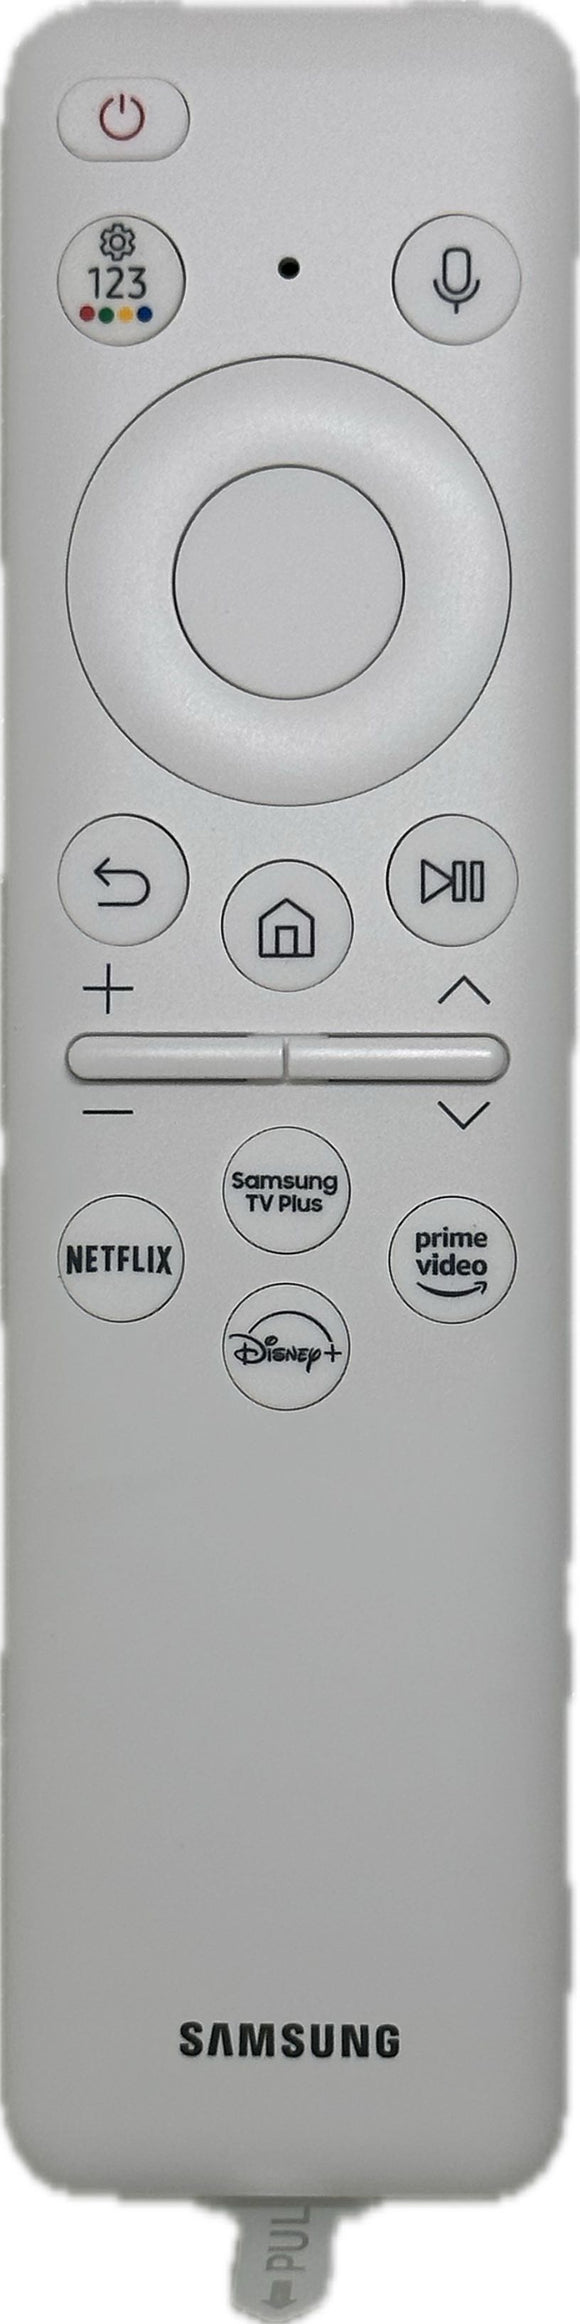 Original Samsung Smart TV Remote Solar Cell Remote Control BN59-01439D Genuine